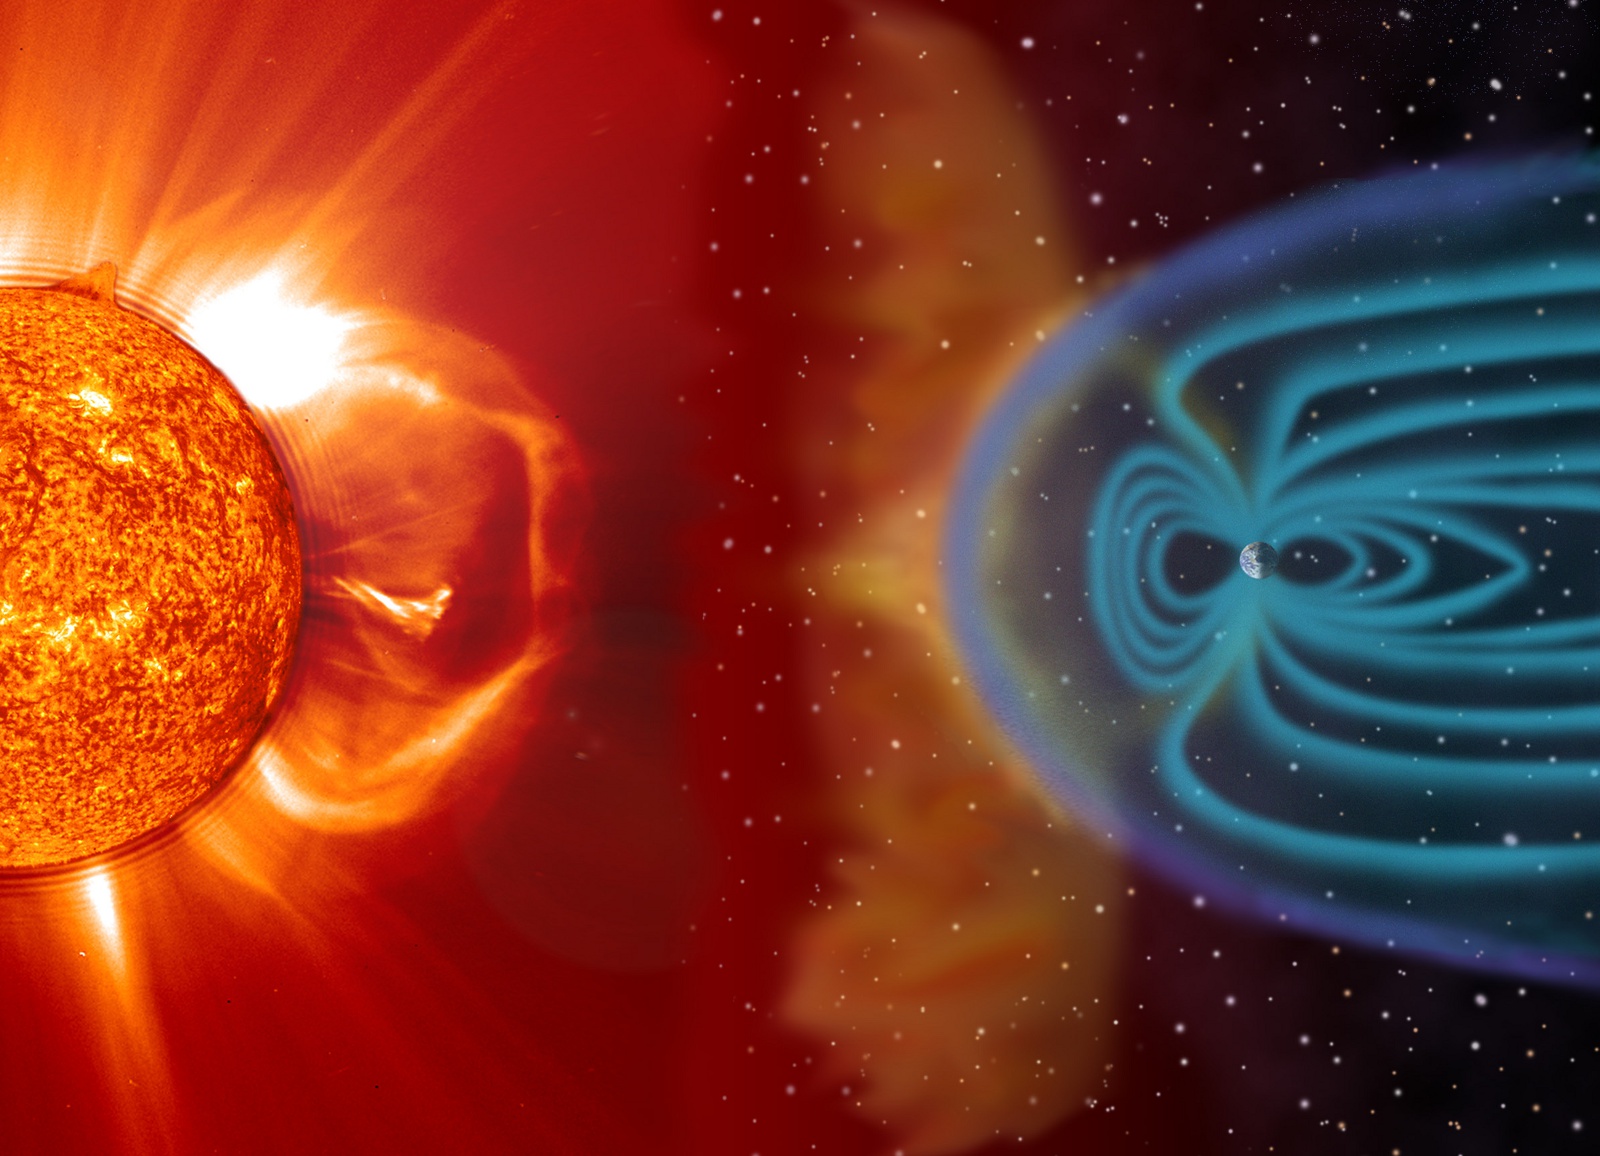 Soleil - Activité solaire - CME - Coronal Mass Ejection - Magnétosphère - Ionosphère - Aurores polaires - SOHO - NASA - Space weather - Solar storm 